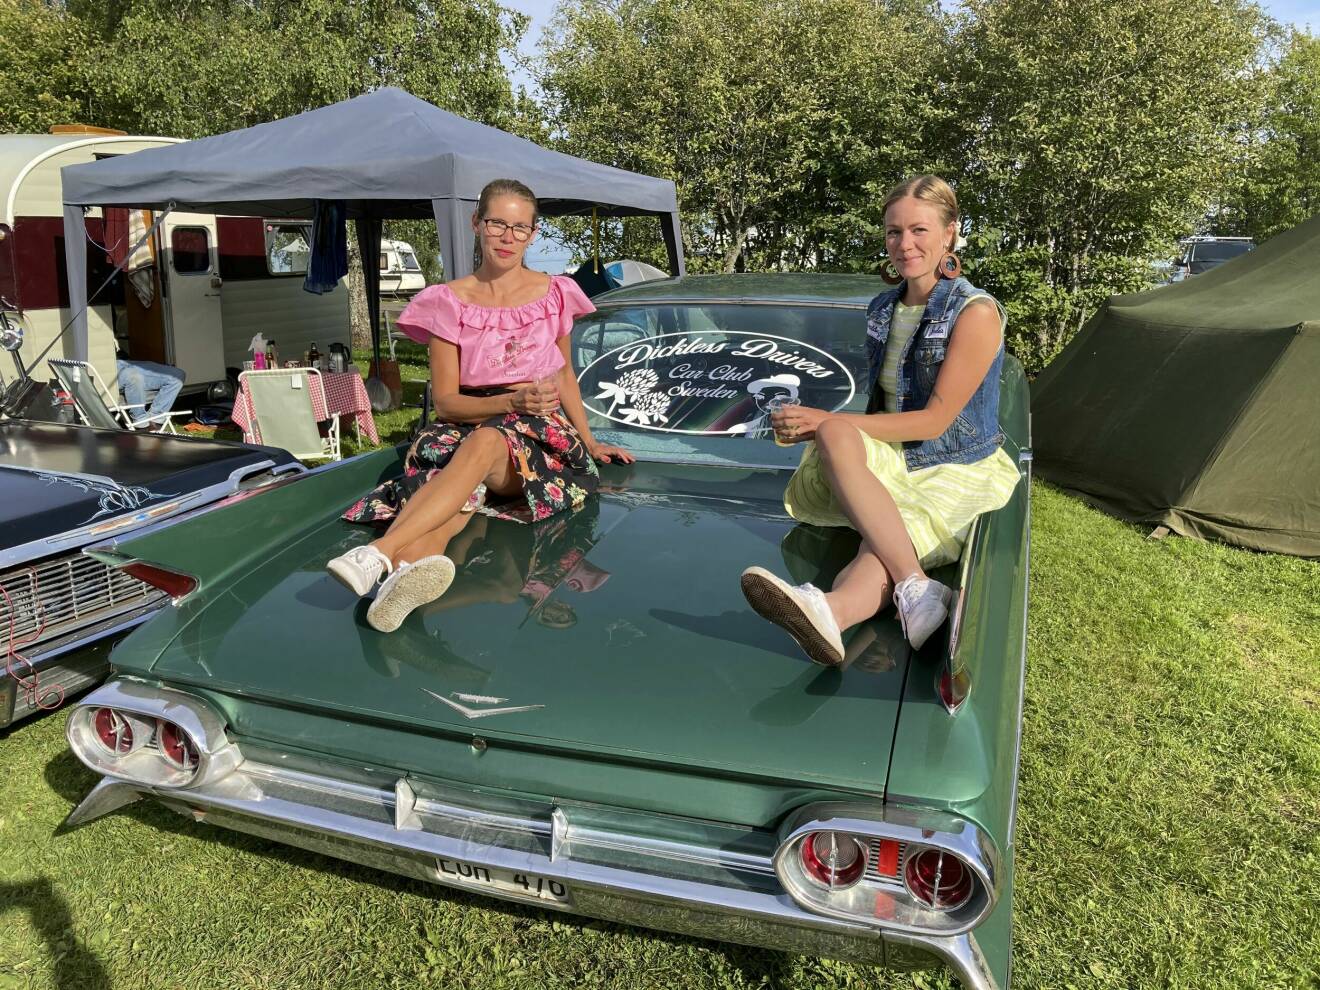 Annelie Sundberg och Julia Lind, i färgglada kjolar, sitter uppkrupna på veteranbilen med Dickless Drivers emblem på bakrutan mellan sig.